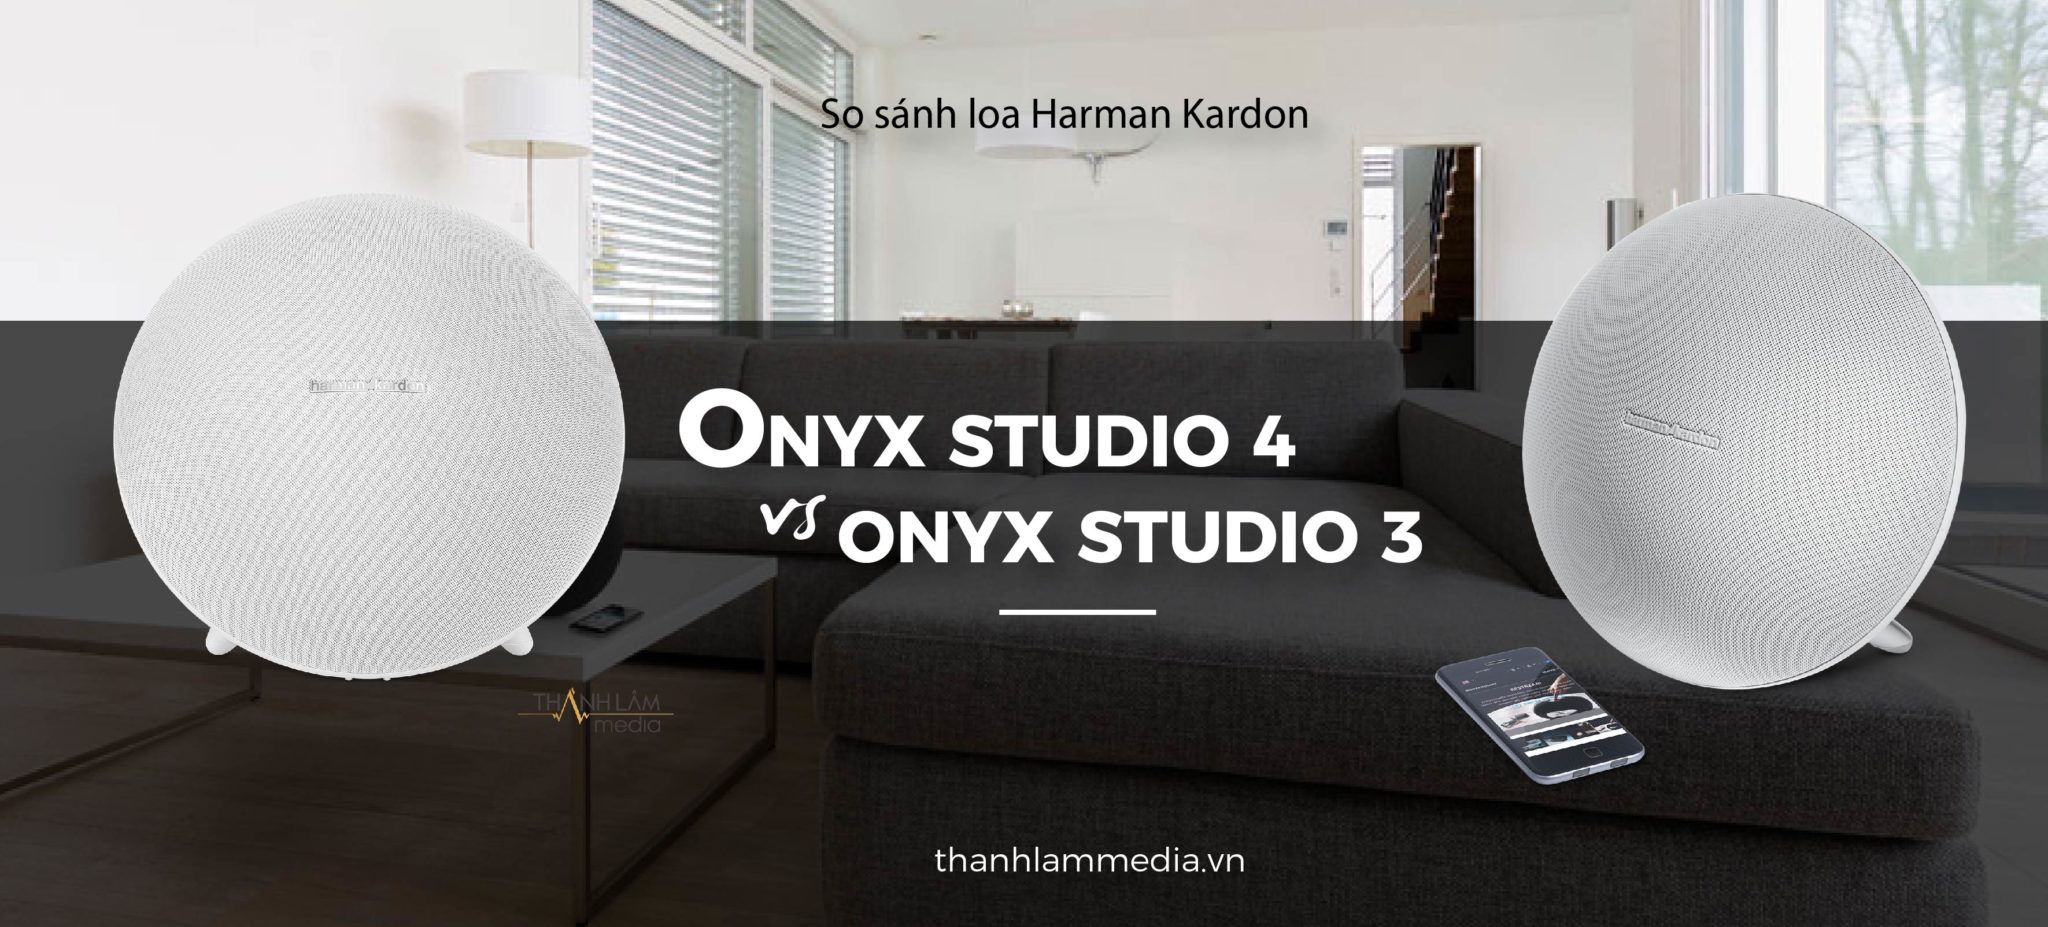 Harman Kardon Onyx Studio 4 khác gì so với Onyx Studio 3? 2